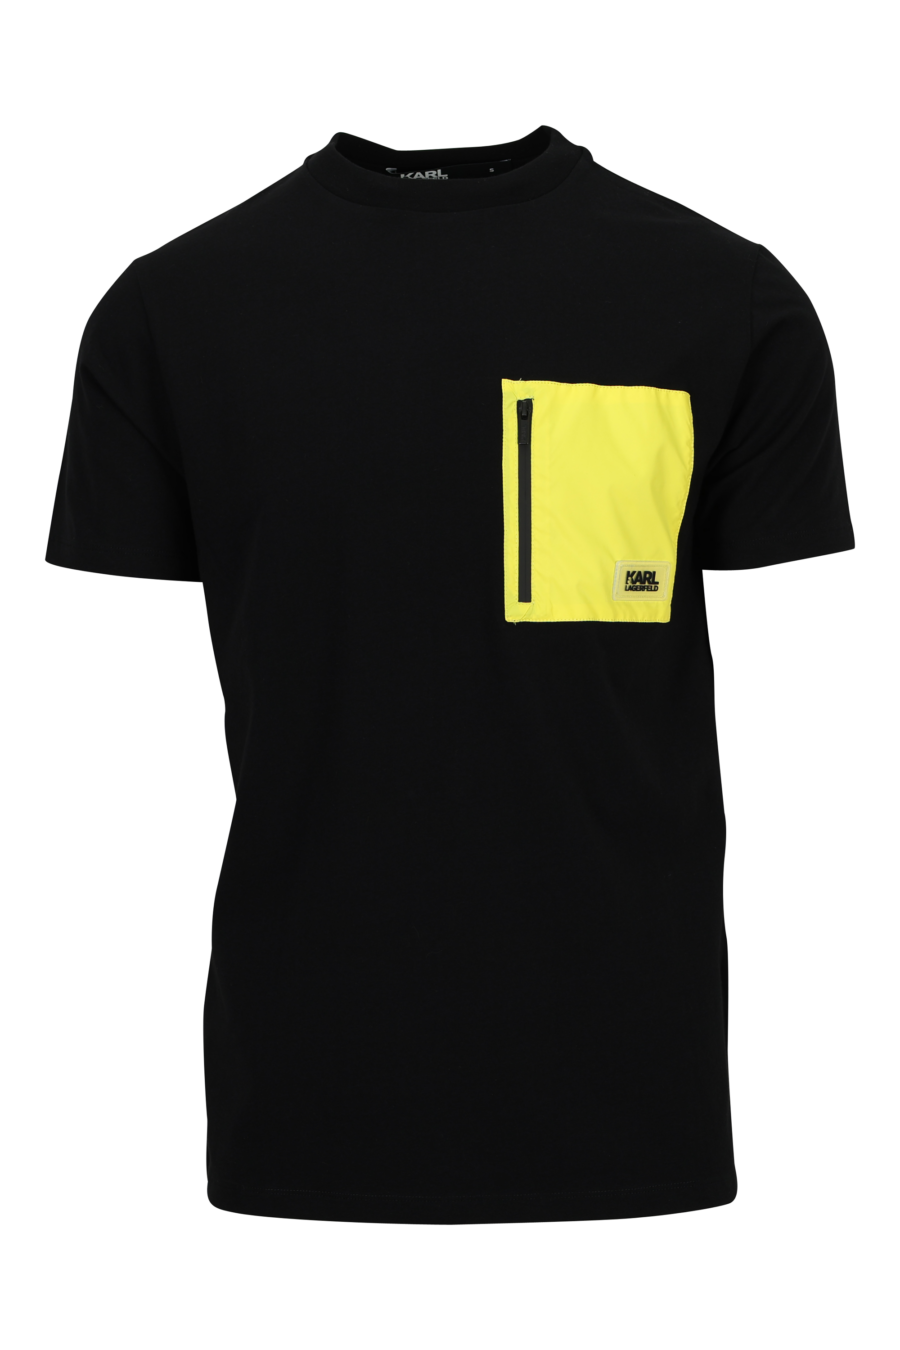 Camiseta negra con parche amarillo y logo - 4062226964593